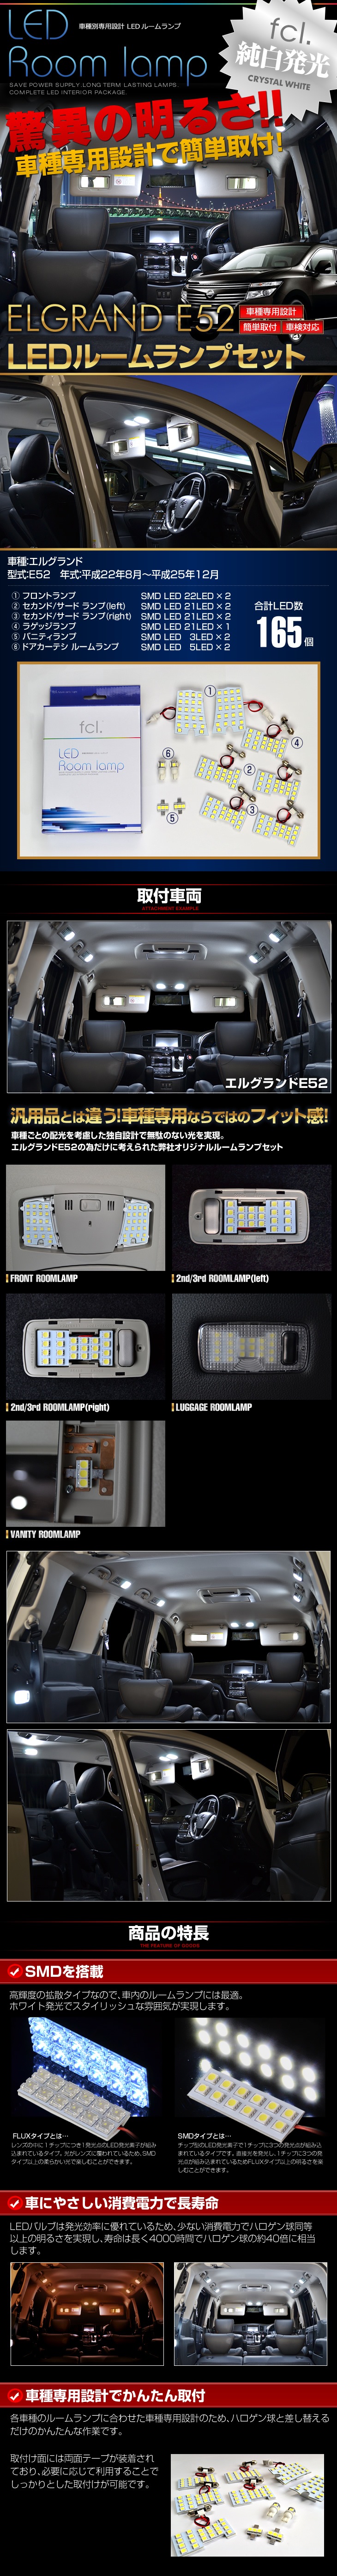 E52 エルグランド用LED ルームランプ【公式通販】fcl. 車のLED専門店